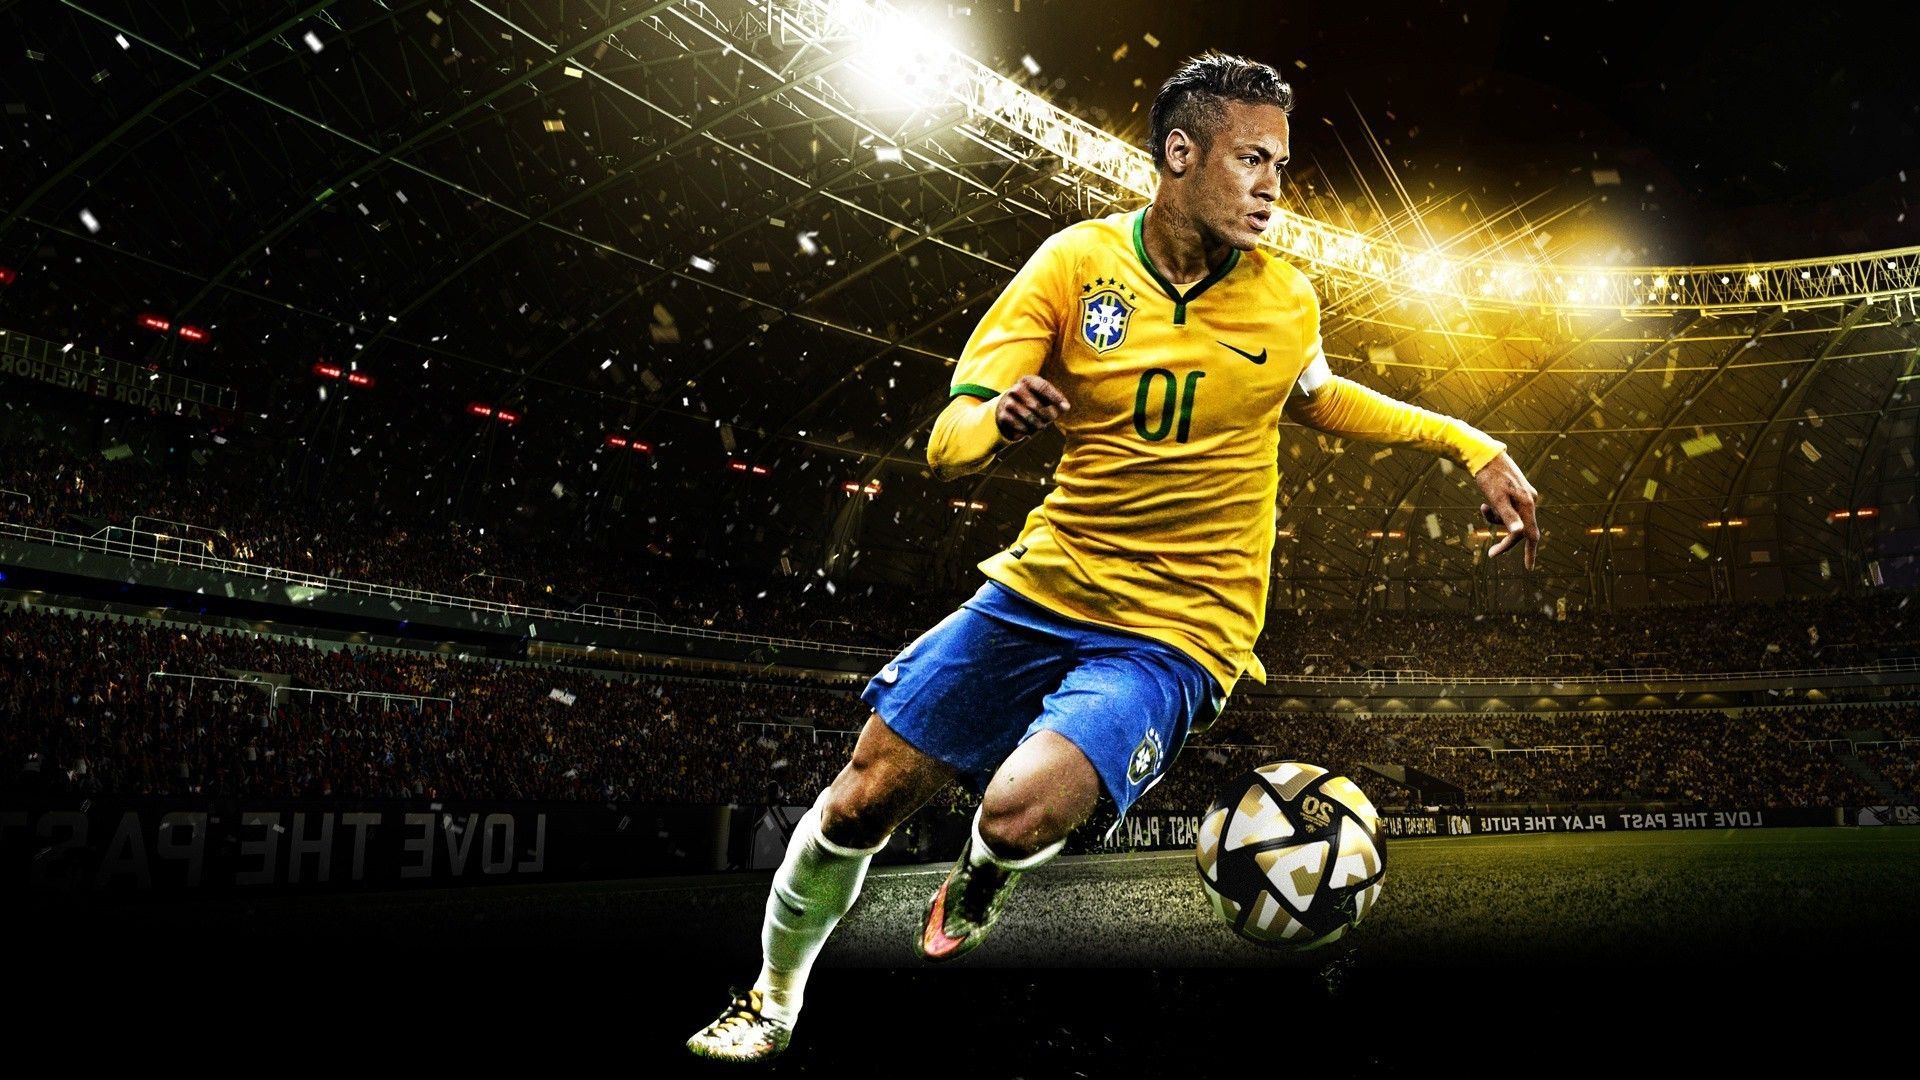 PSG Neymar Wallpaper Descargar Neymar JR Imagen HD de Fútbol, Neymar - Todo  fondos